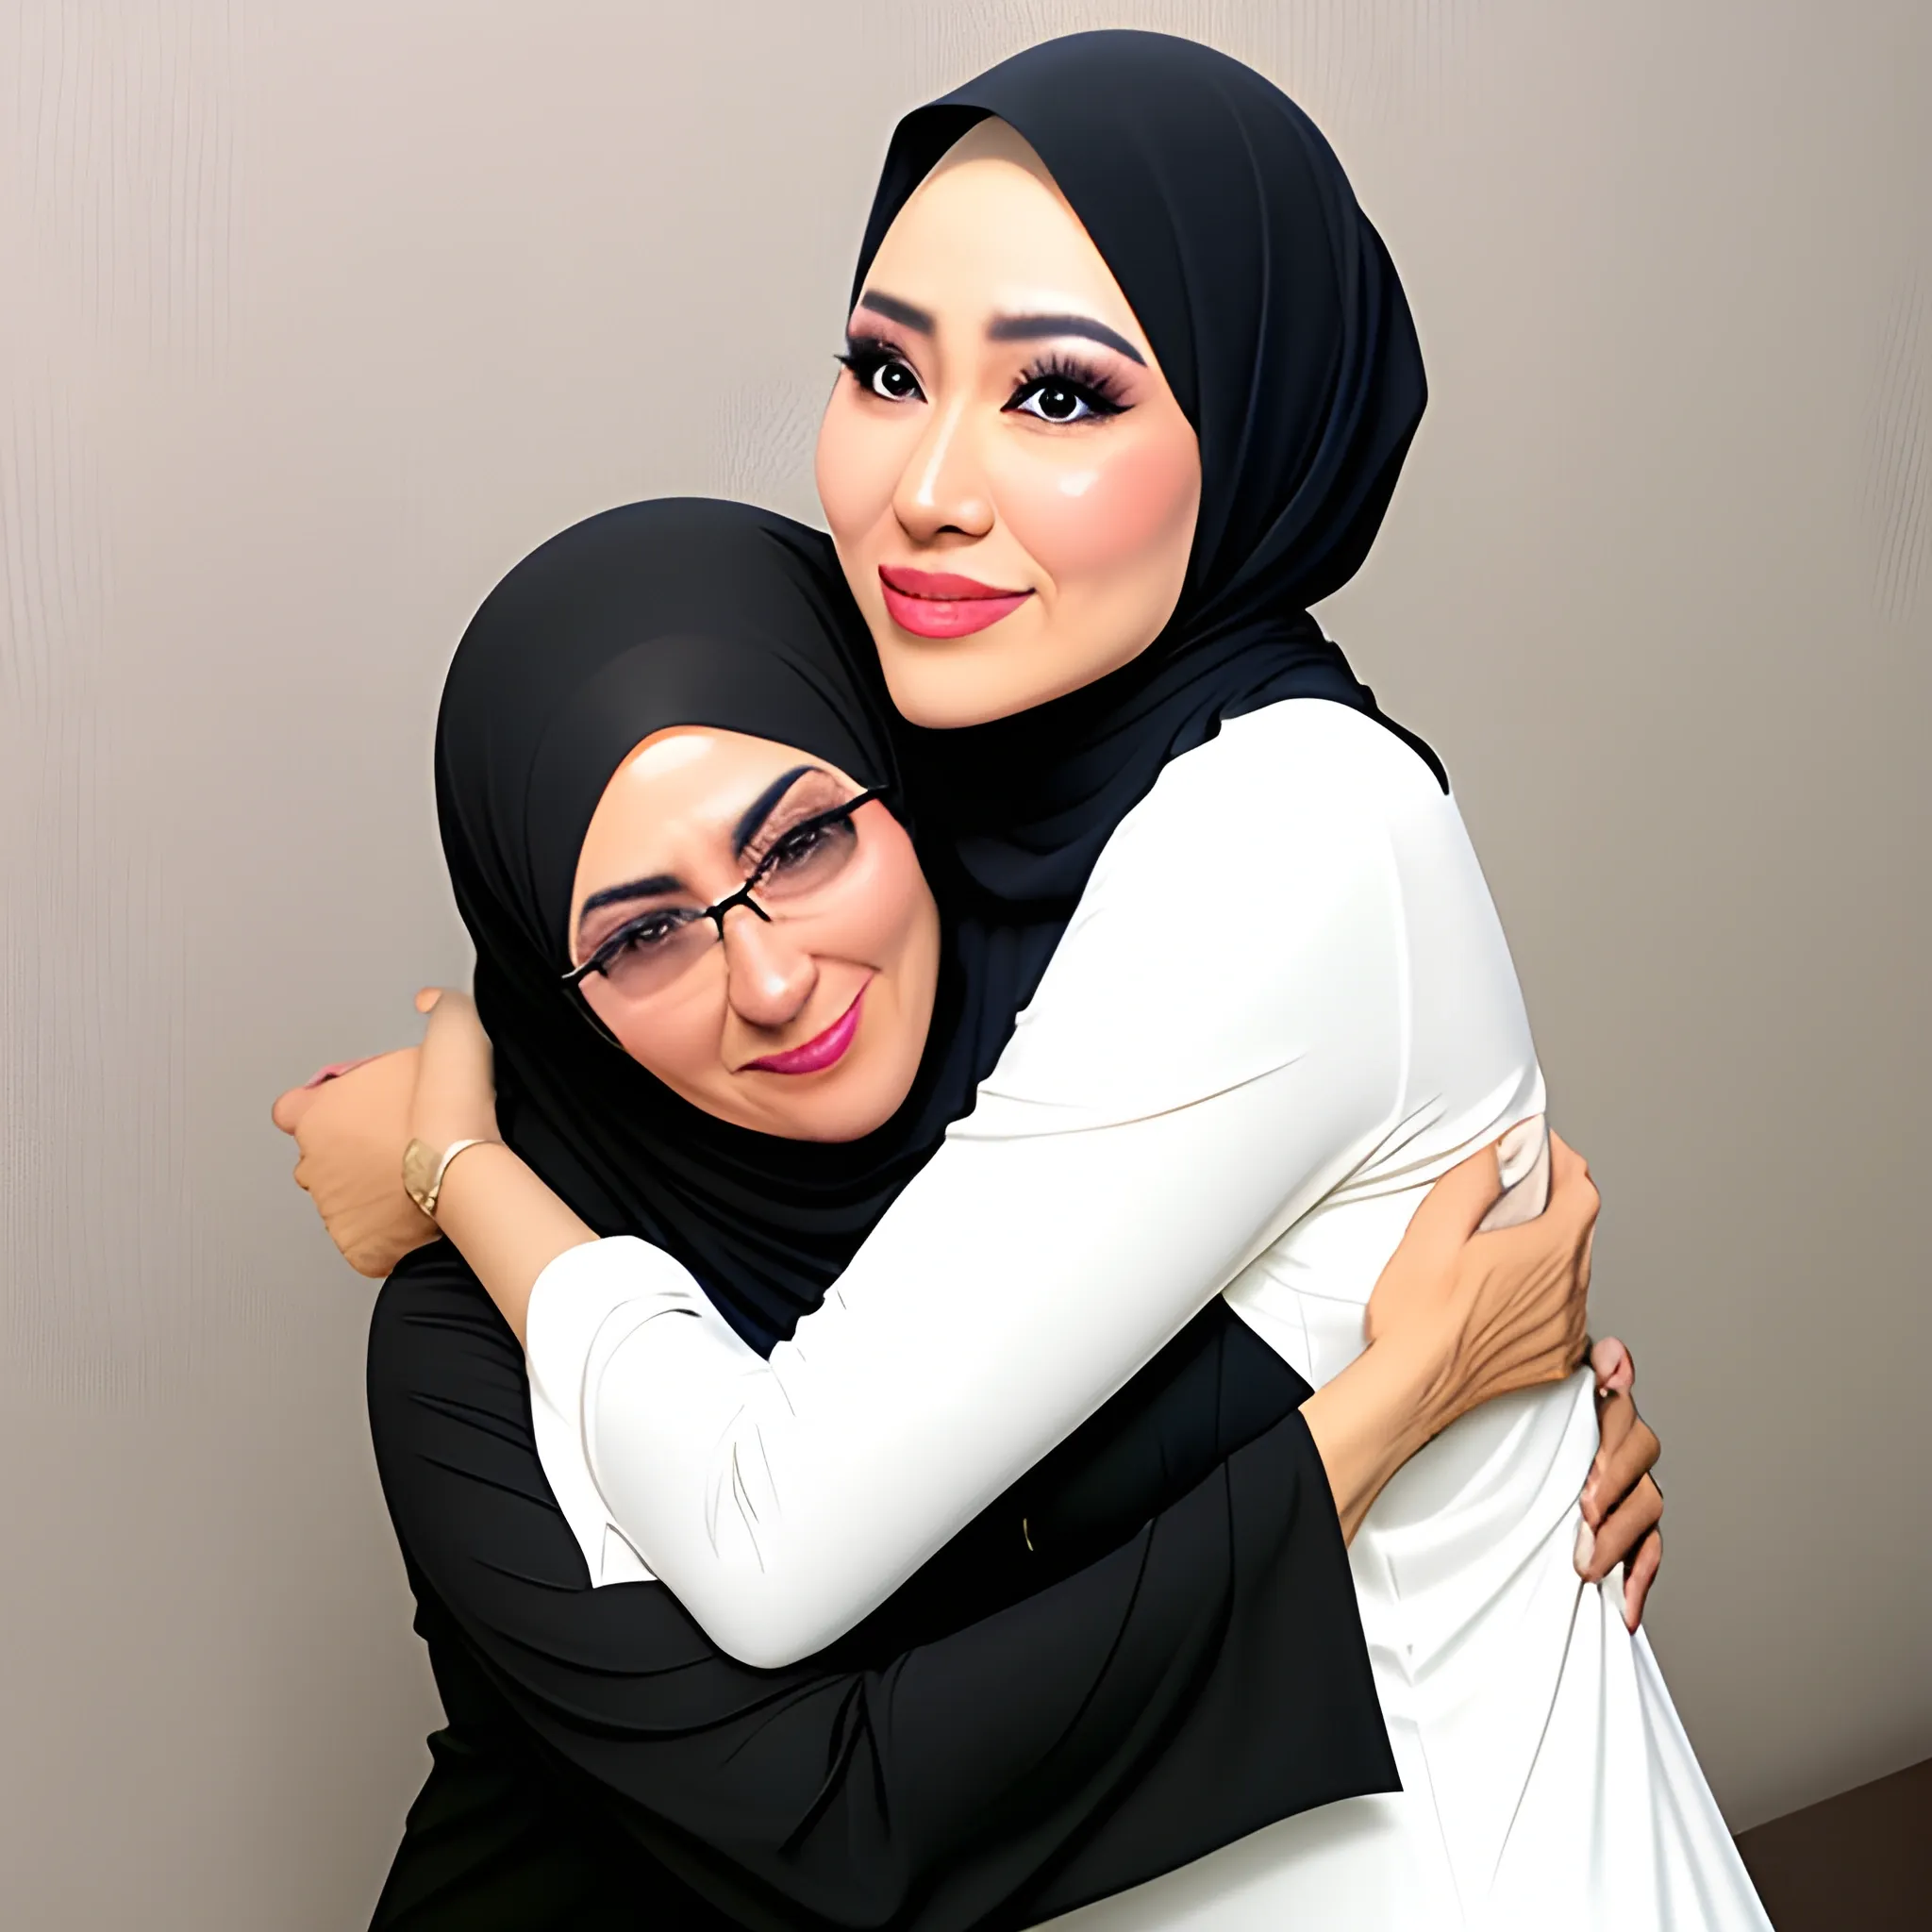 Hijab mom and son romantic hug